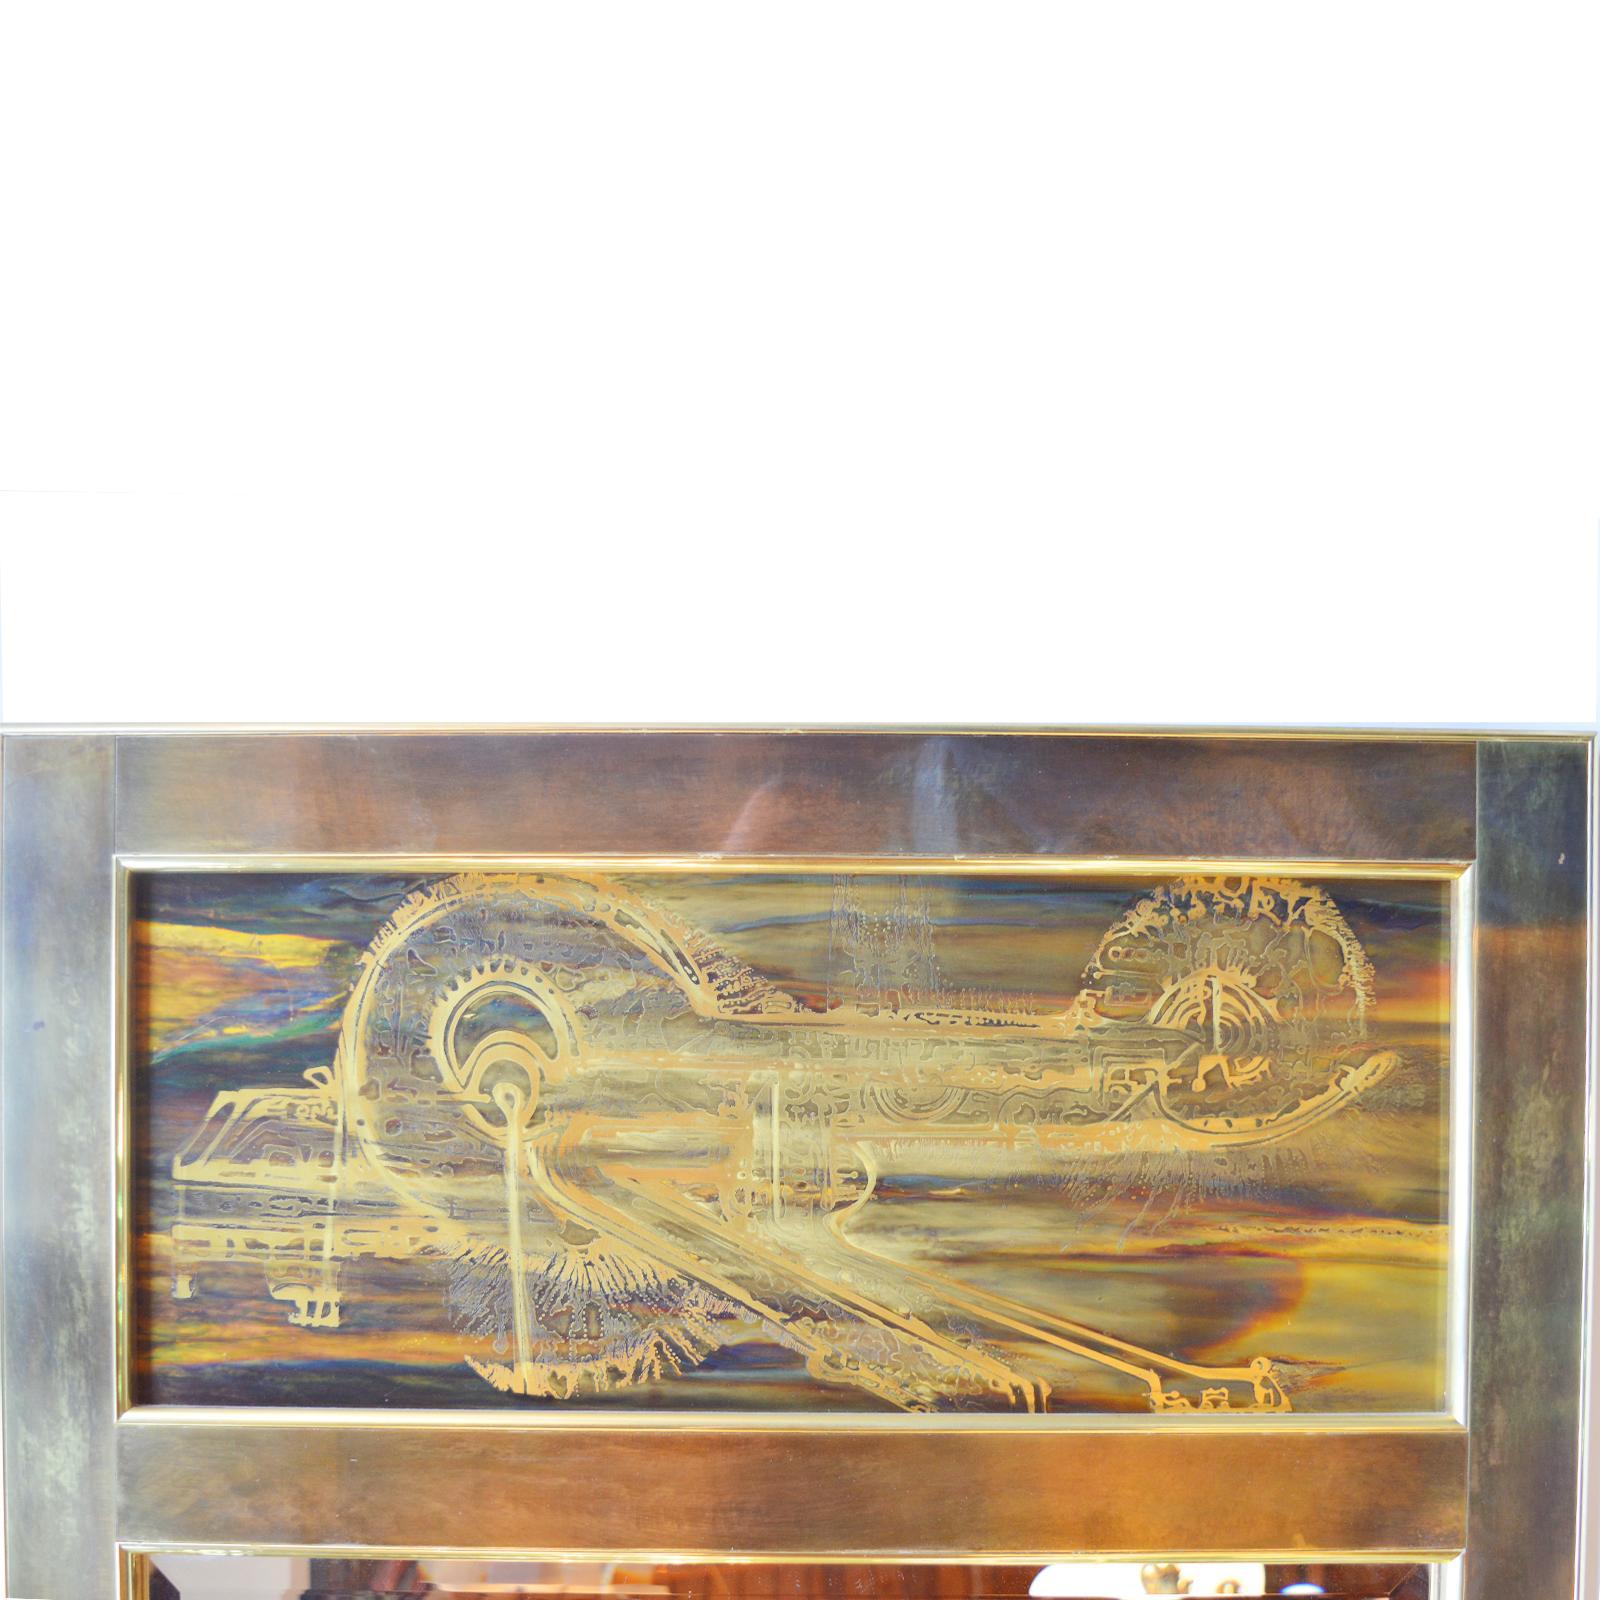 Miroir mural en laiton gravé à l'acide par Bernhard Rohne pour Mastercraft dans les années 1970,

Miroir rectangulaire de style trumeau, le panneau supérieur avec un design abstrait en laiton oxydé et gravé sur un verre rectangulaire biseauté.